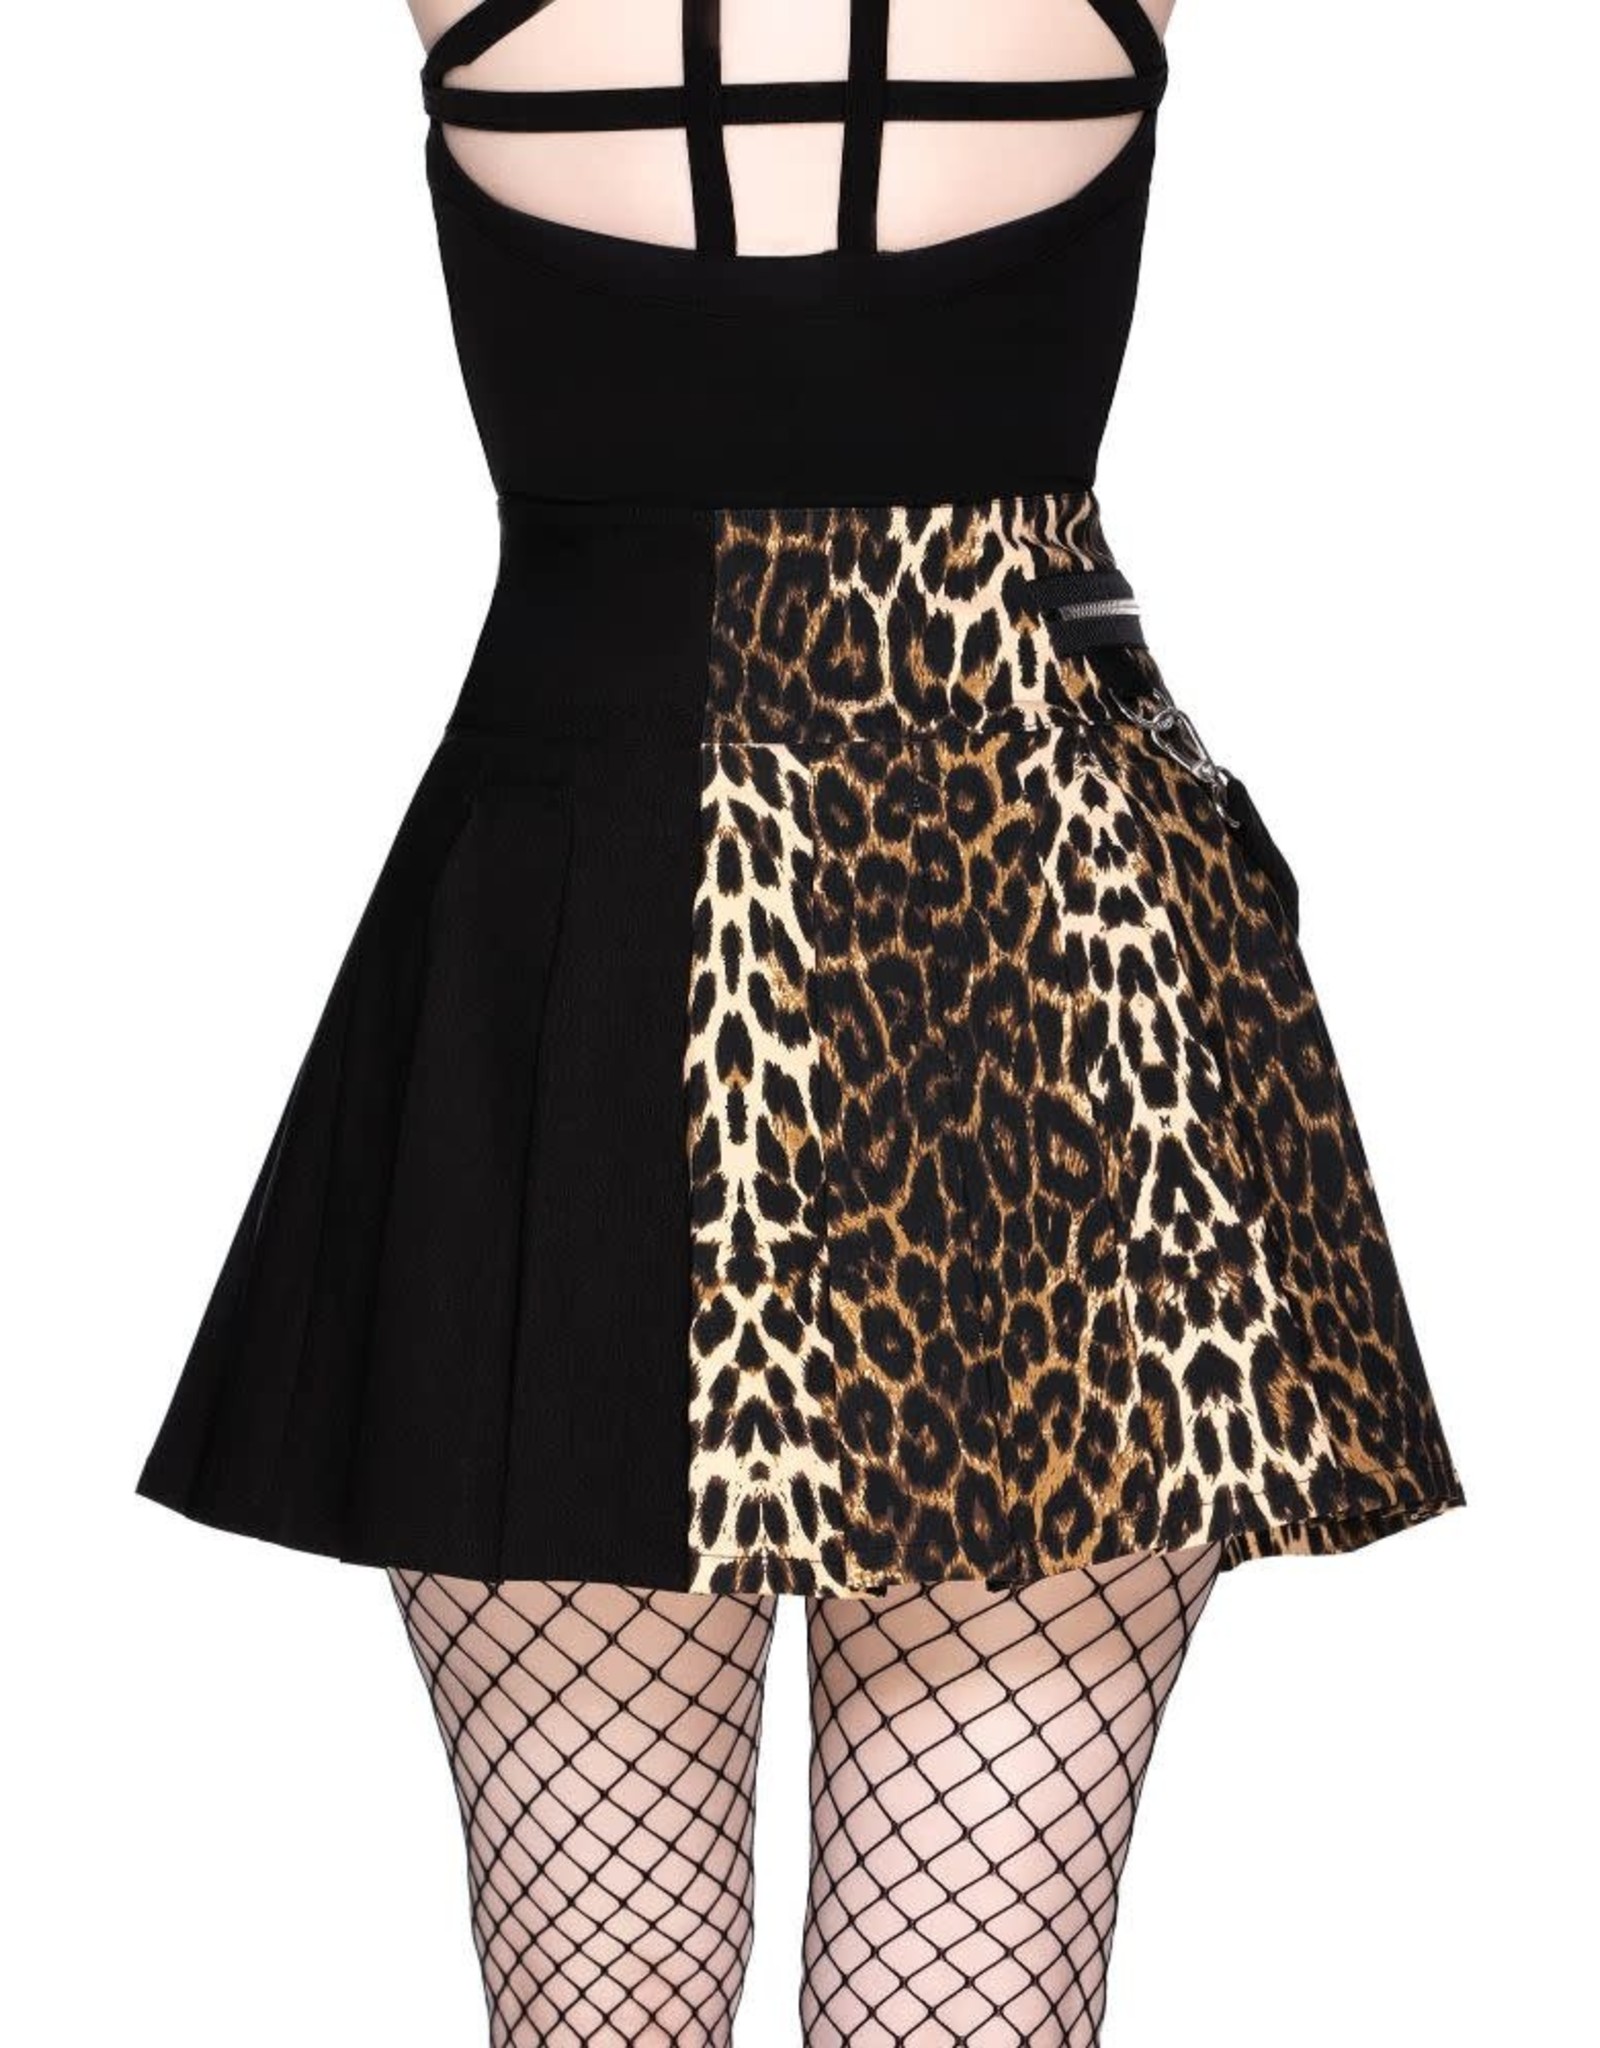 Savage Leopard Mini Skirt SOLDE